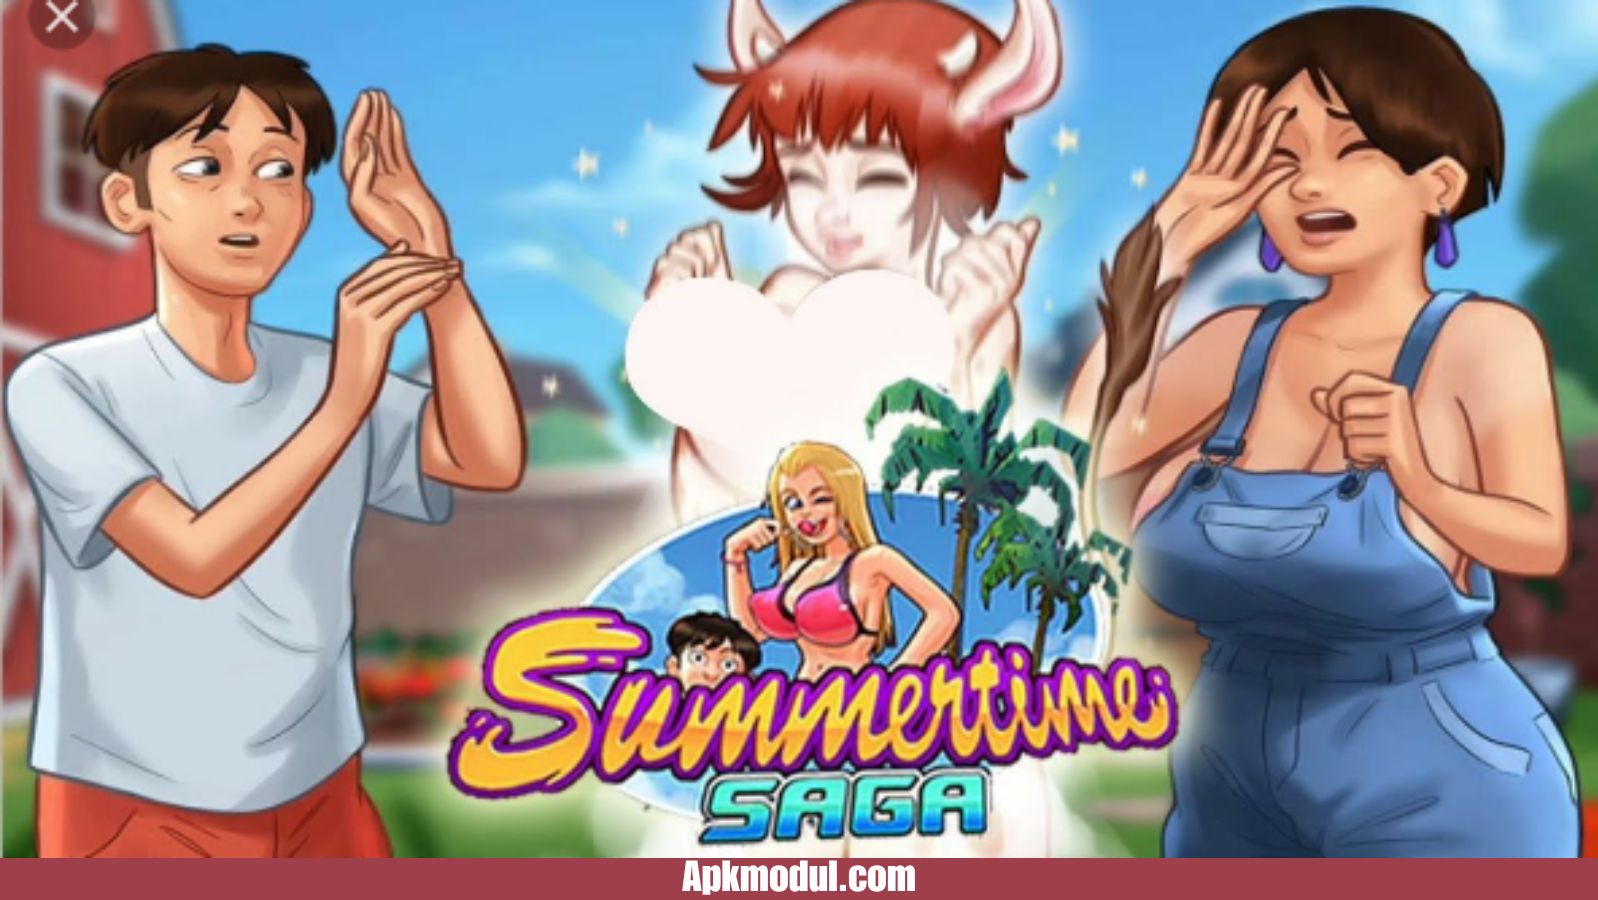 Summertime Saga MOD APK